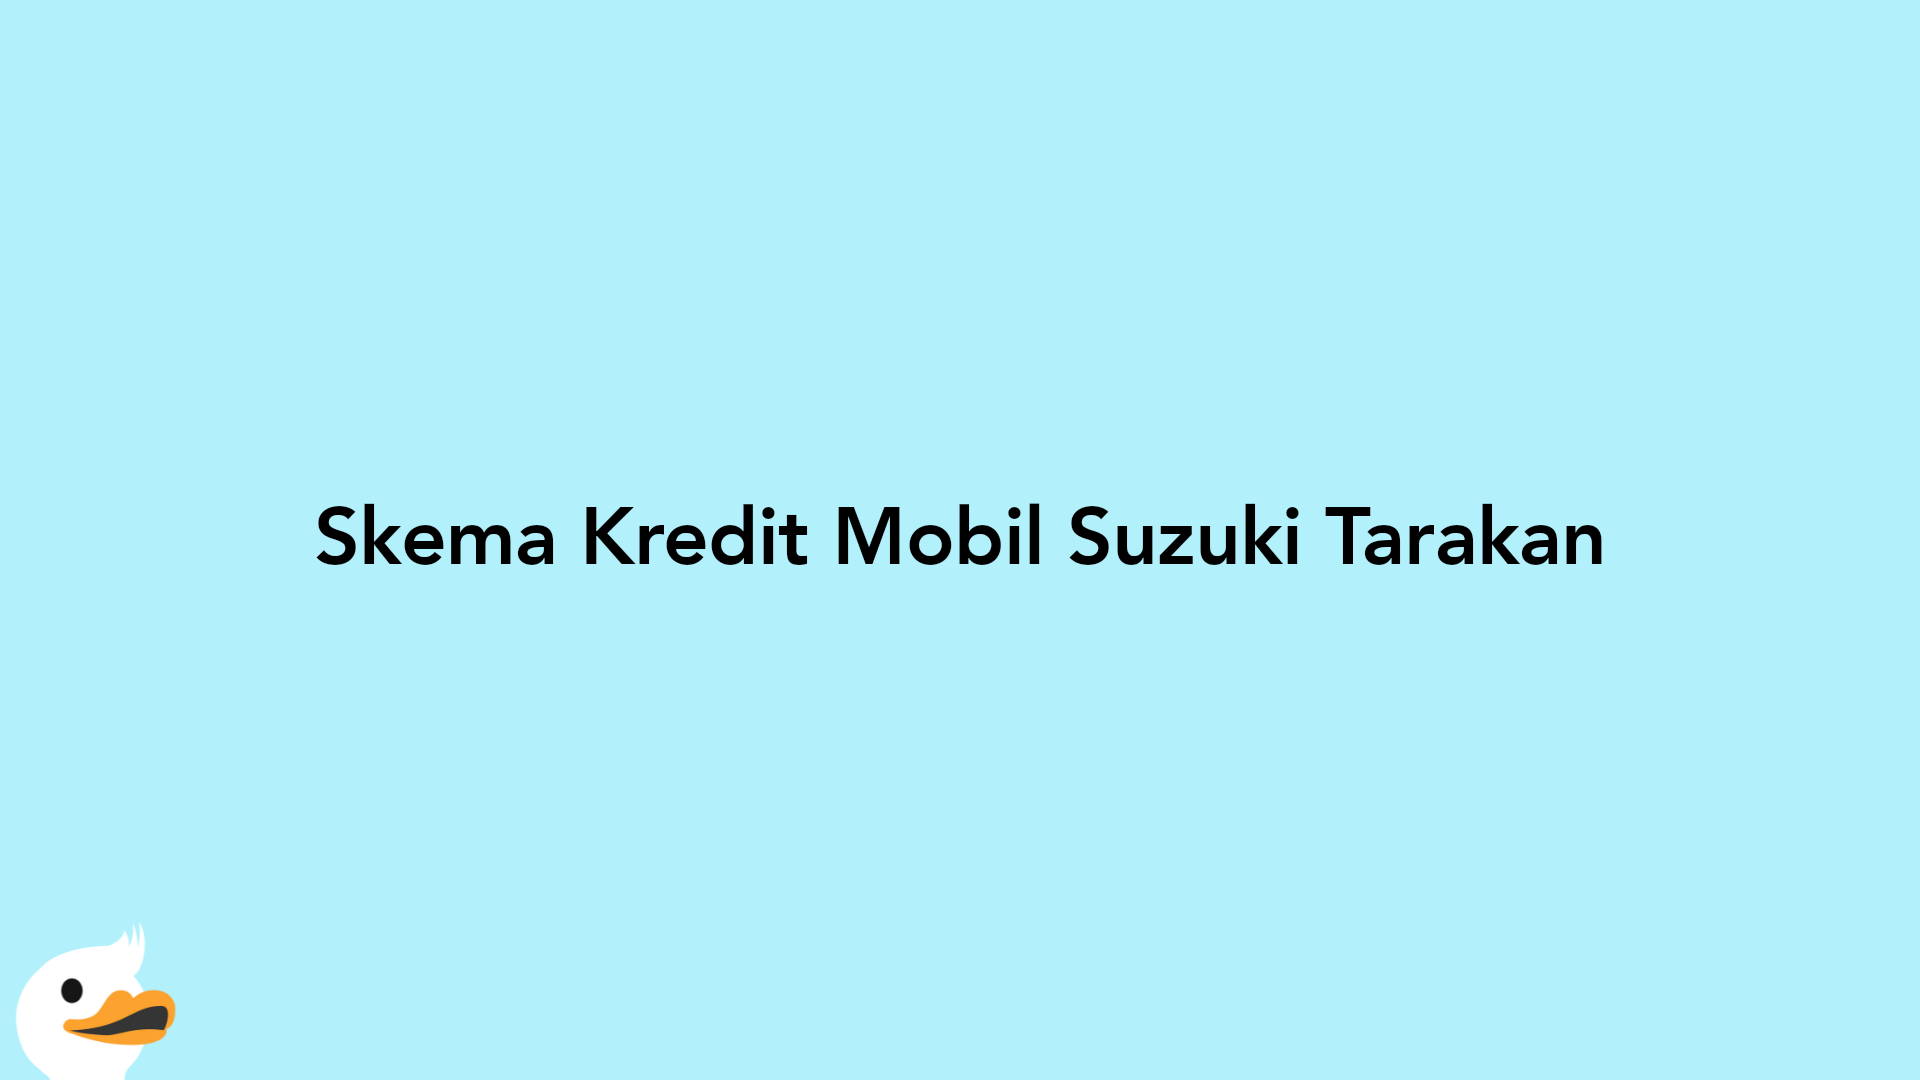 Skema Kredit Mobil Suzuki Tarakan